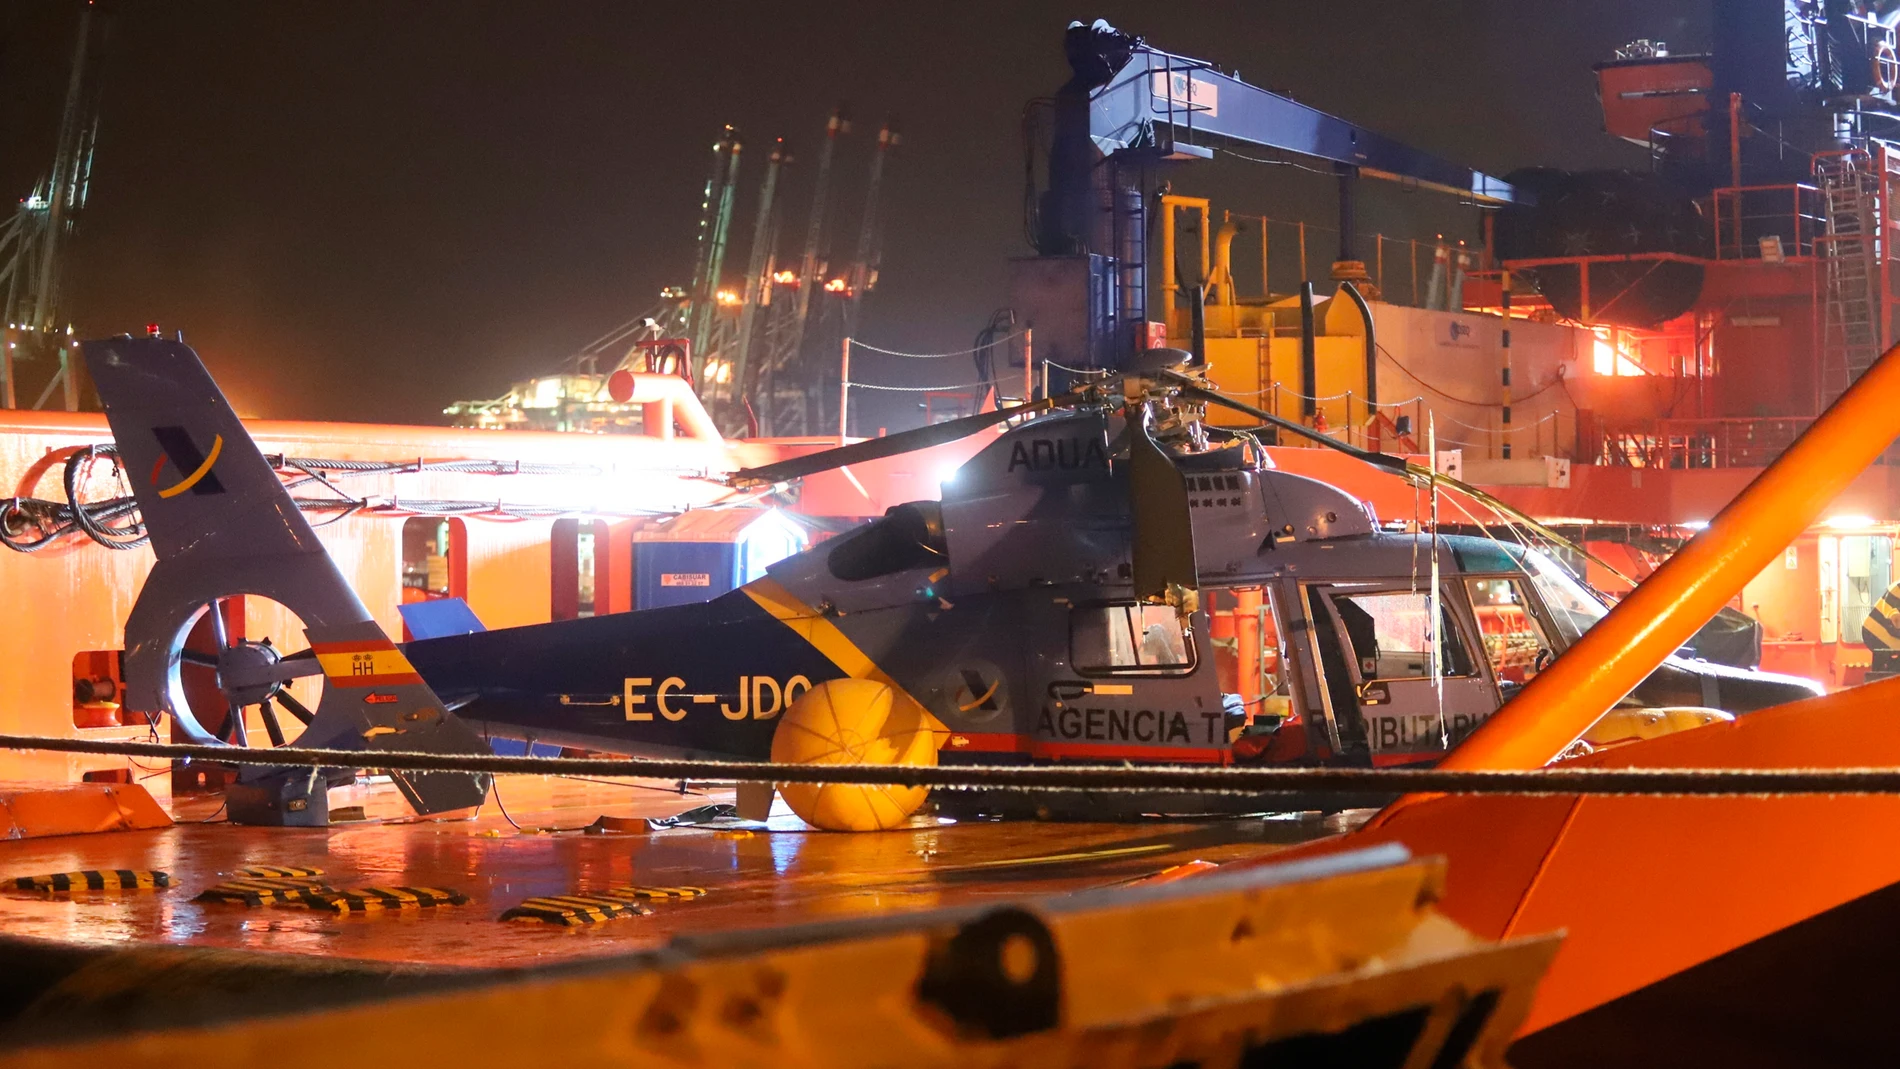 El helicóptero del Servicio de Vigilancia Aduanera (SVA) que sufrió un accidente al precipitarse al mar en el Estrecho, a consecuencia del cual falleció un agente, ha sido recuperado este domingo del mar. EFE/Carrasco Ragel